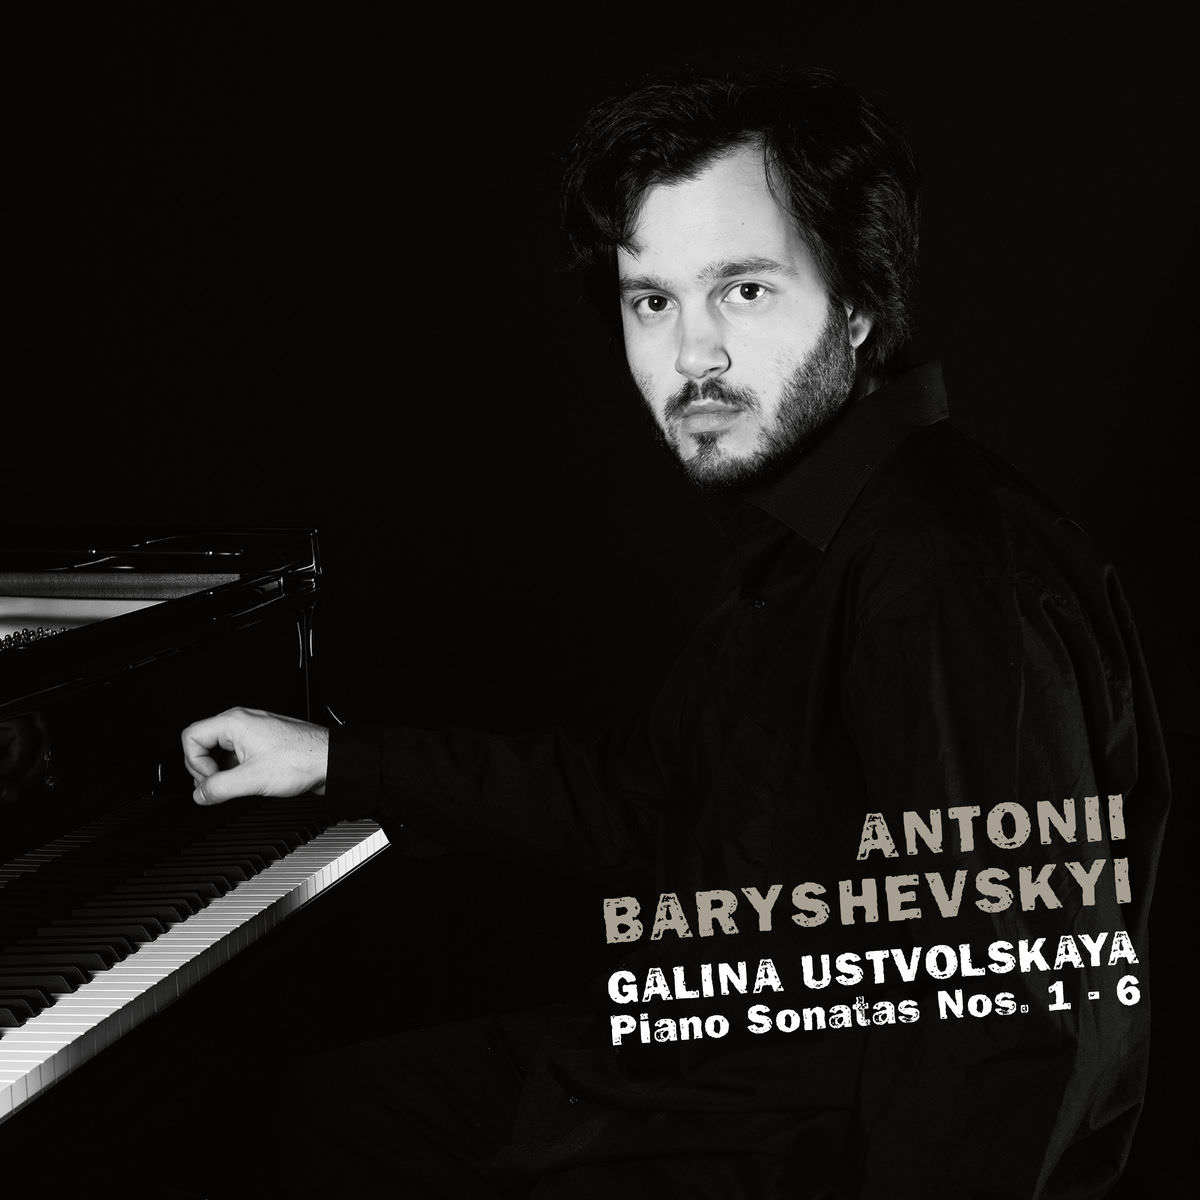 Antonii Baryshevskyi - Galina Ustvolskaya: Piano Sonatas Nos. 1 - 6 (2017) [FLAC 24bit/48kHz]